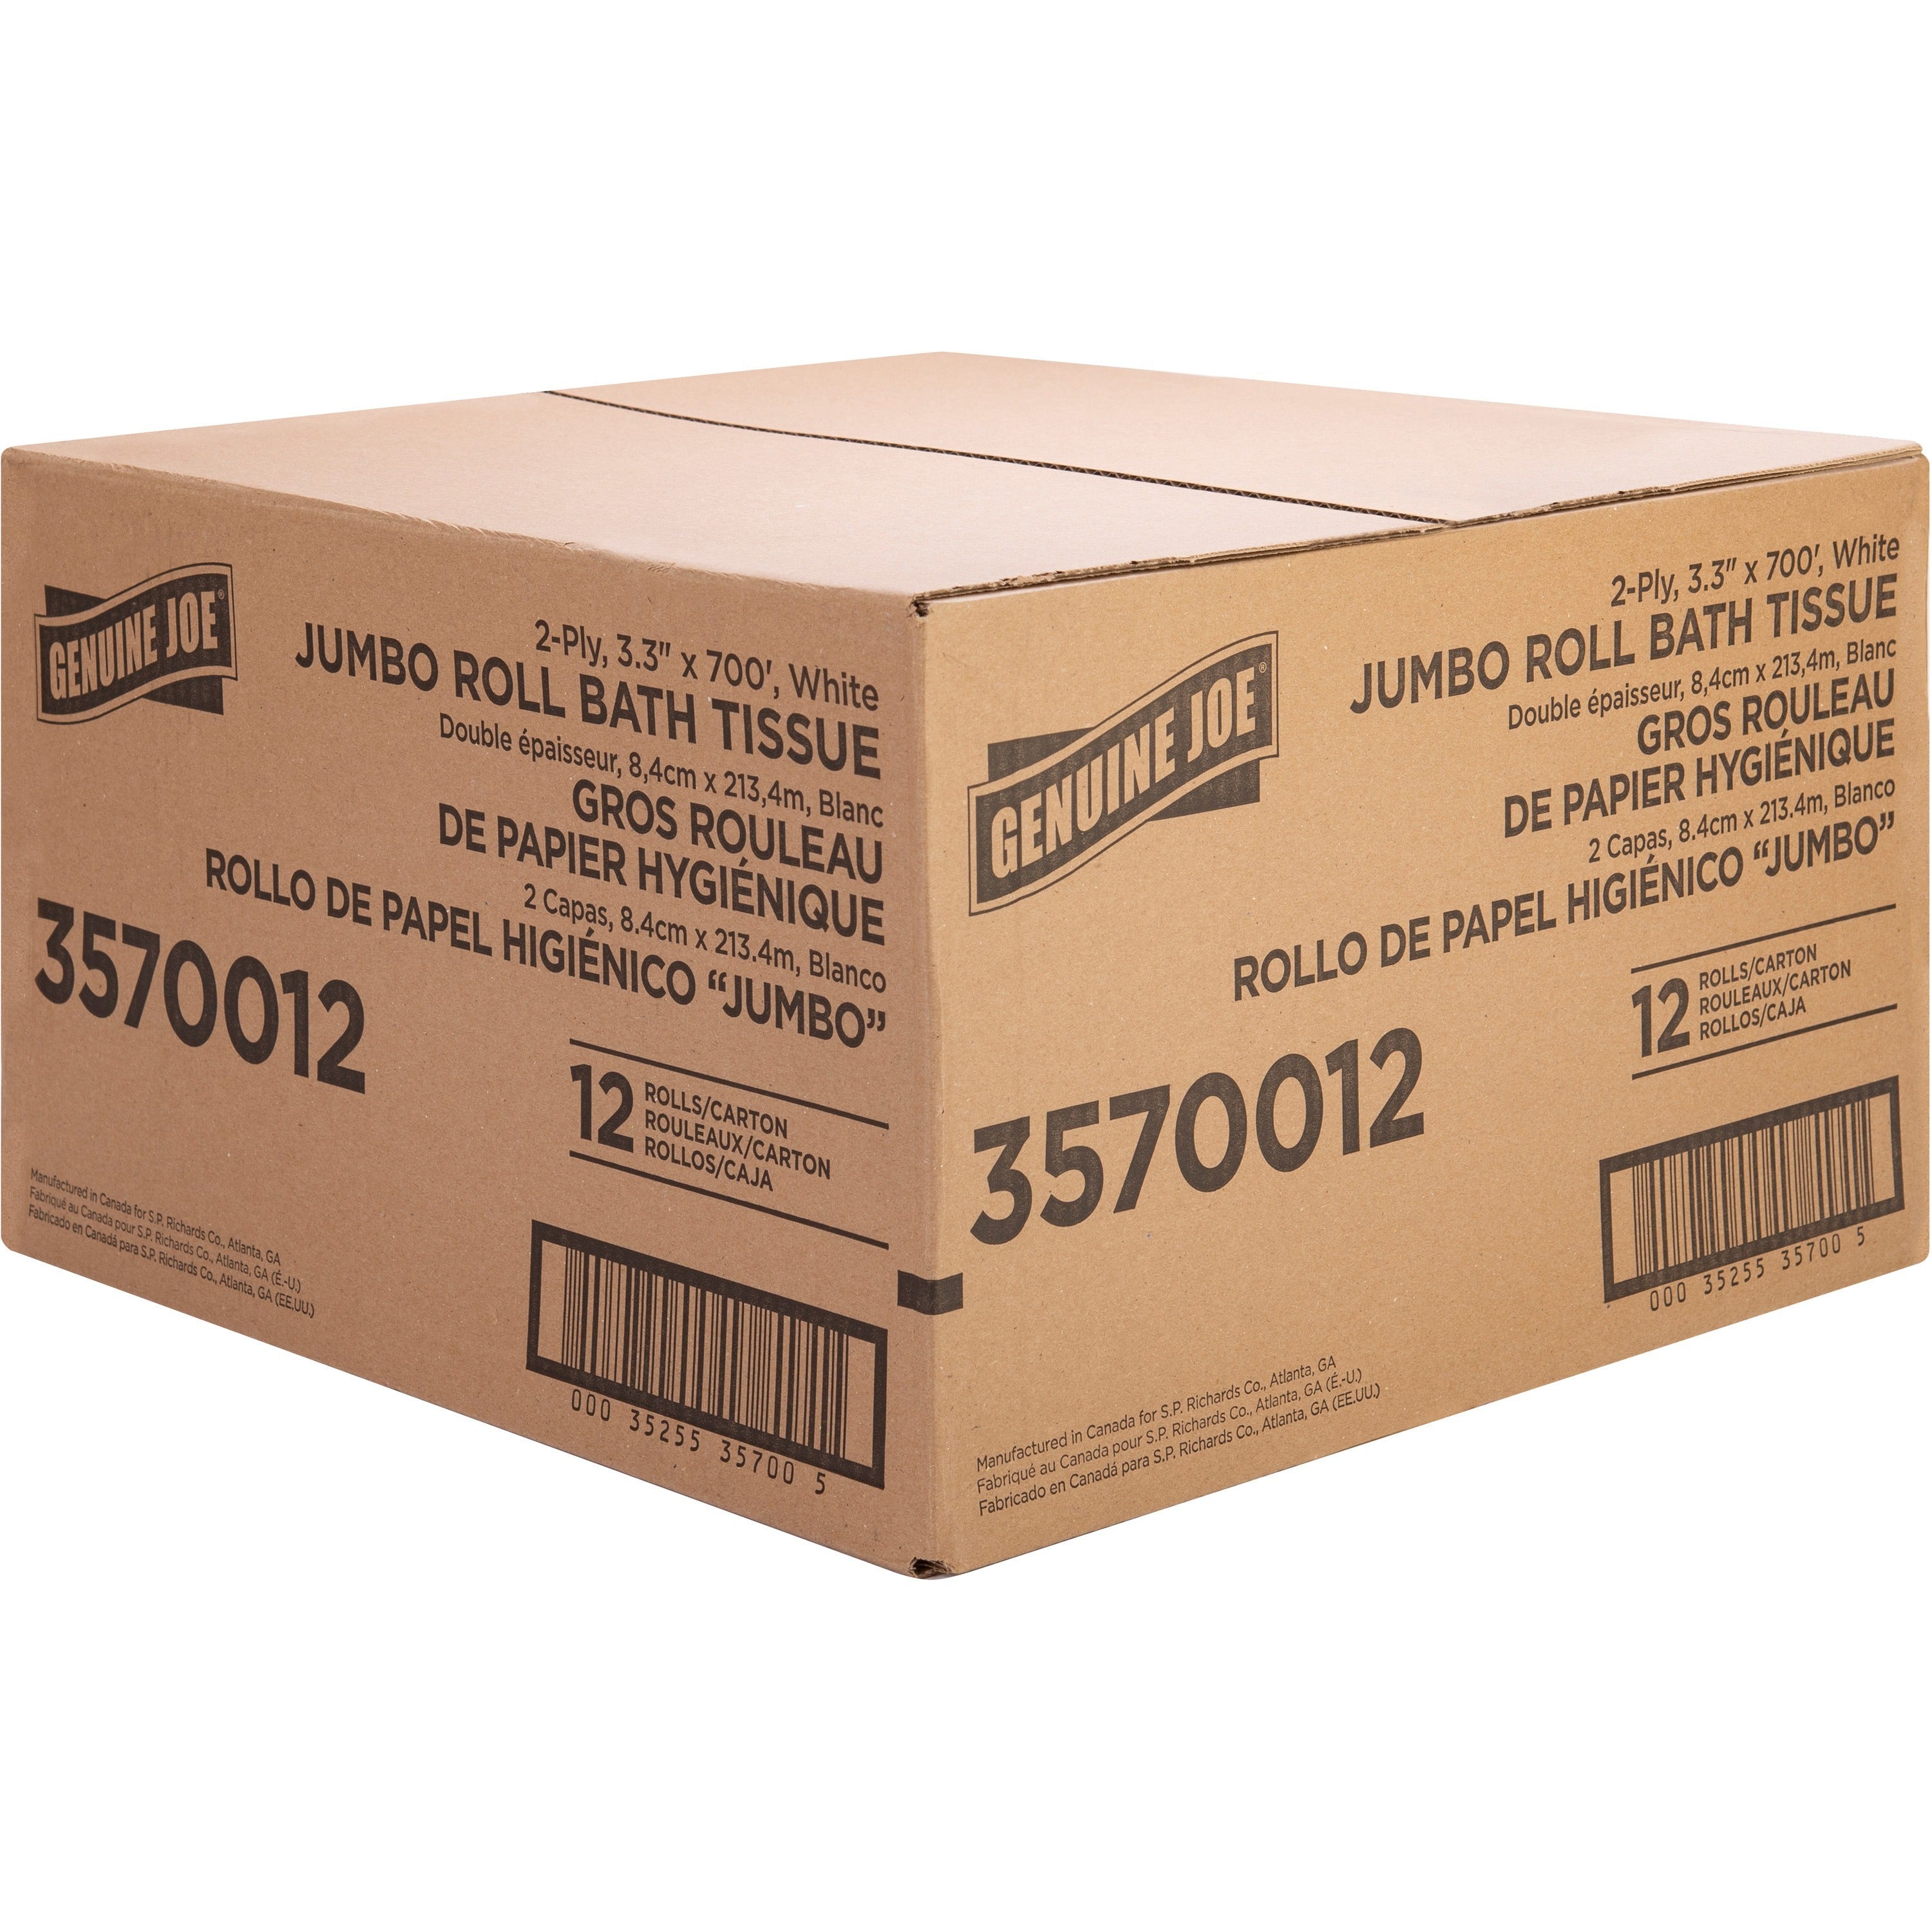 genuine-joe-jumbo-jr-dispenser-bath-tissue-roll-2-ply-330-x-700-ft-888-roll-diameter-white-fiber-sewer-safe-septic-safe-for-bathroom-12-carton_gjo3570012 - 3